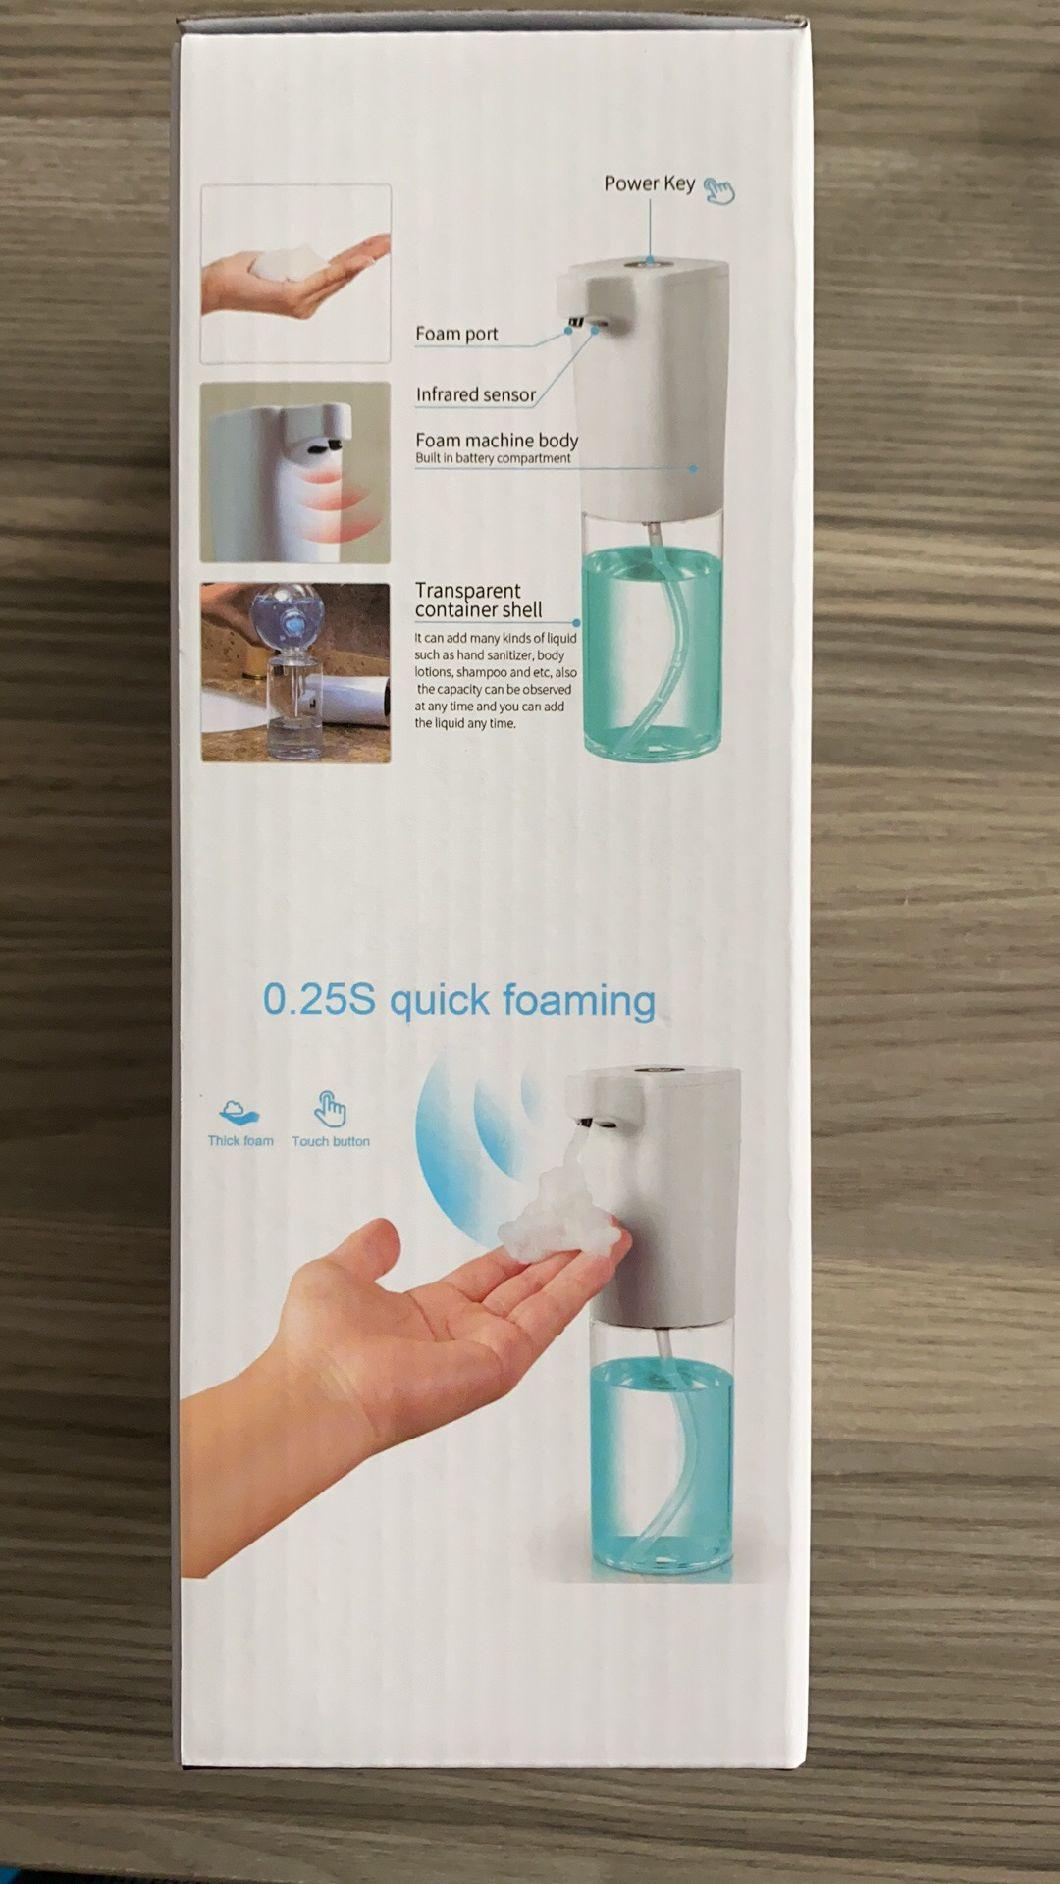 Touchless Hands Free Sanitizer Liquid Smart Automatic Sensor Soap Dispenser